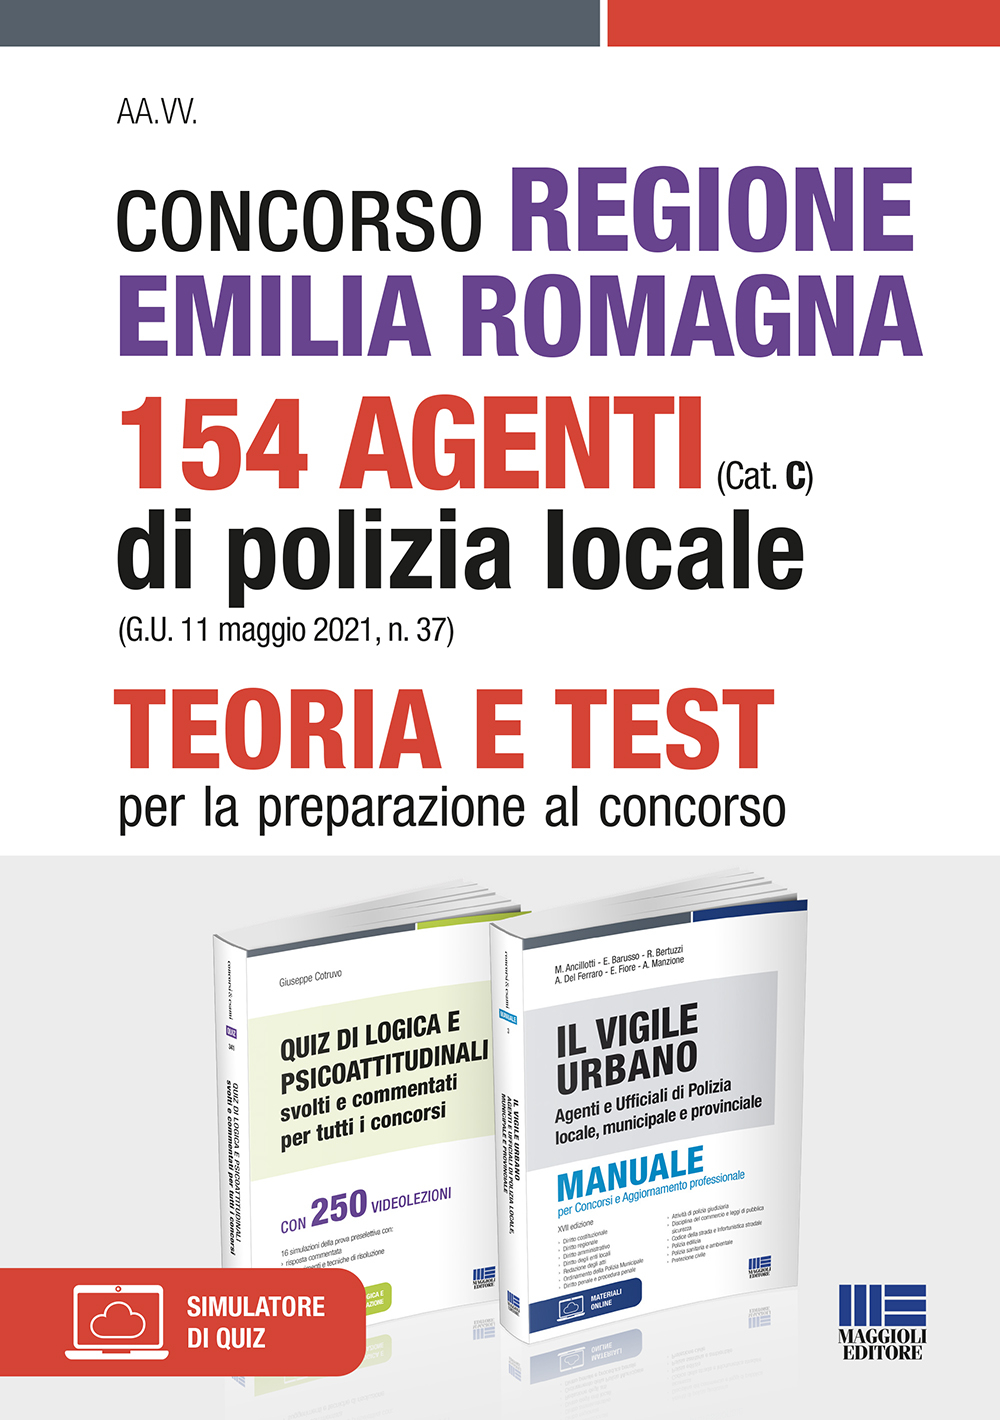 Concorso Regione Emilia Romagna 154 Agenti di Polizia locale (Cat. C) (G.U. 11 maggio 2021, n. 37) - Kit completo